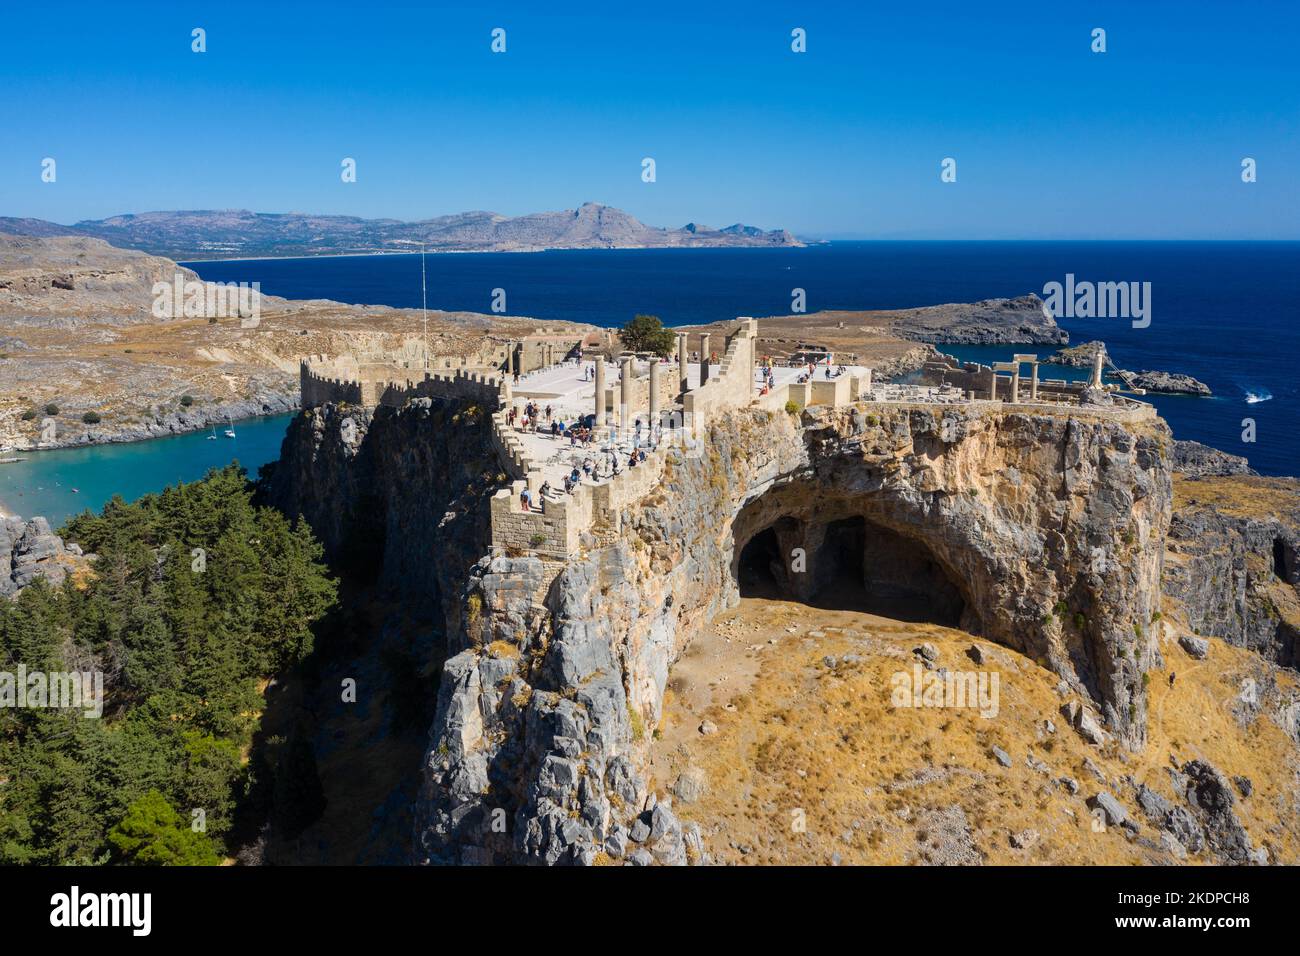 Veduta aerea della famosa destinazione turistica dell'isola di rodi. Villaggio Lindos, con l'acropoli e il mare egano. Dodecaneso, Grecia. Foto Stock